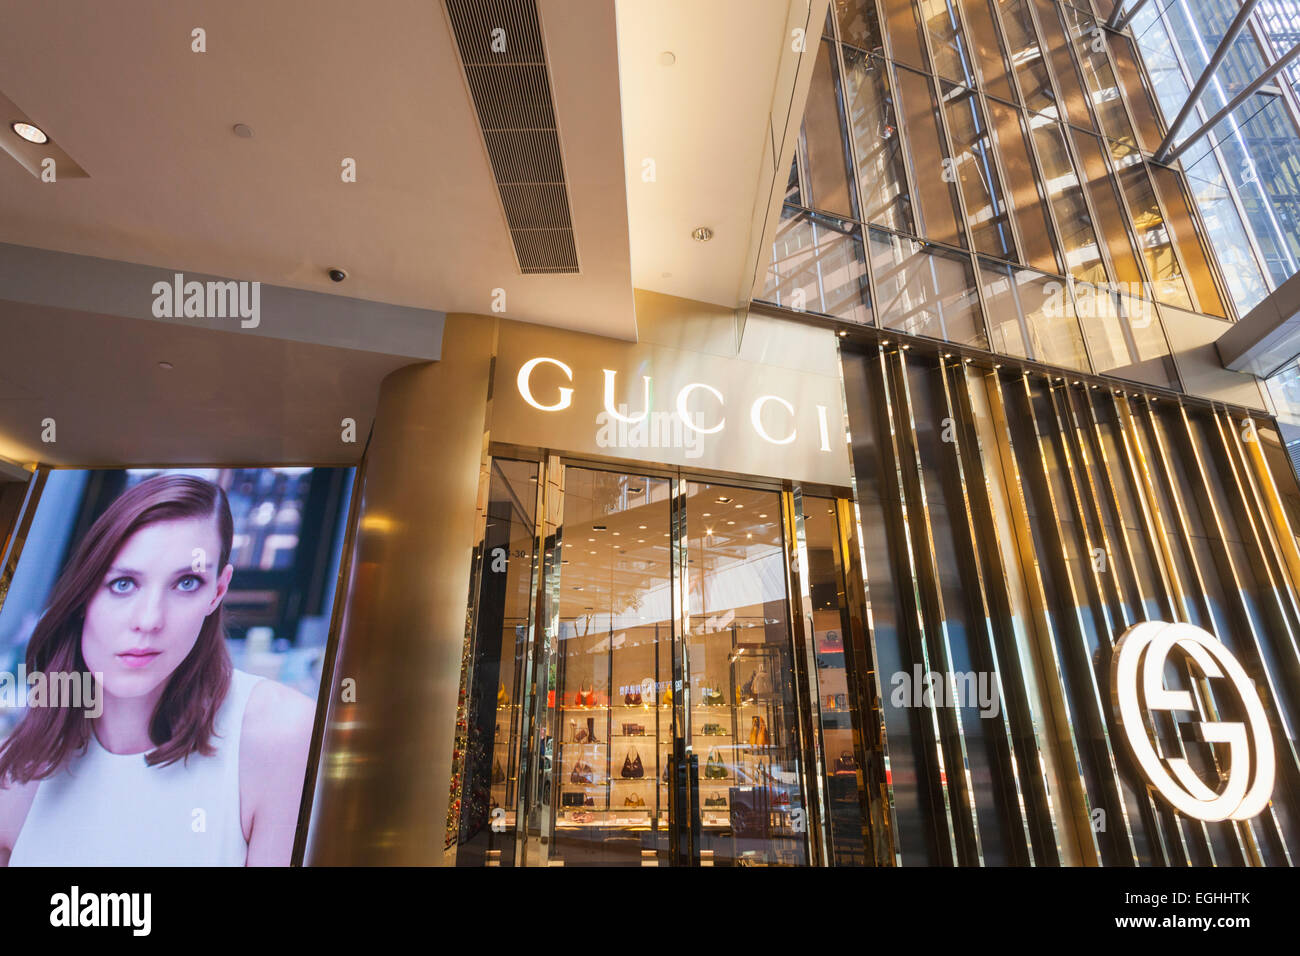 China, Hong Kong, Central, Landmark, Gucci Store Stock Photo - Alamy